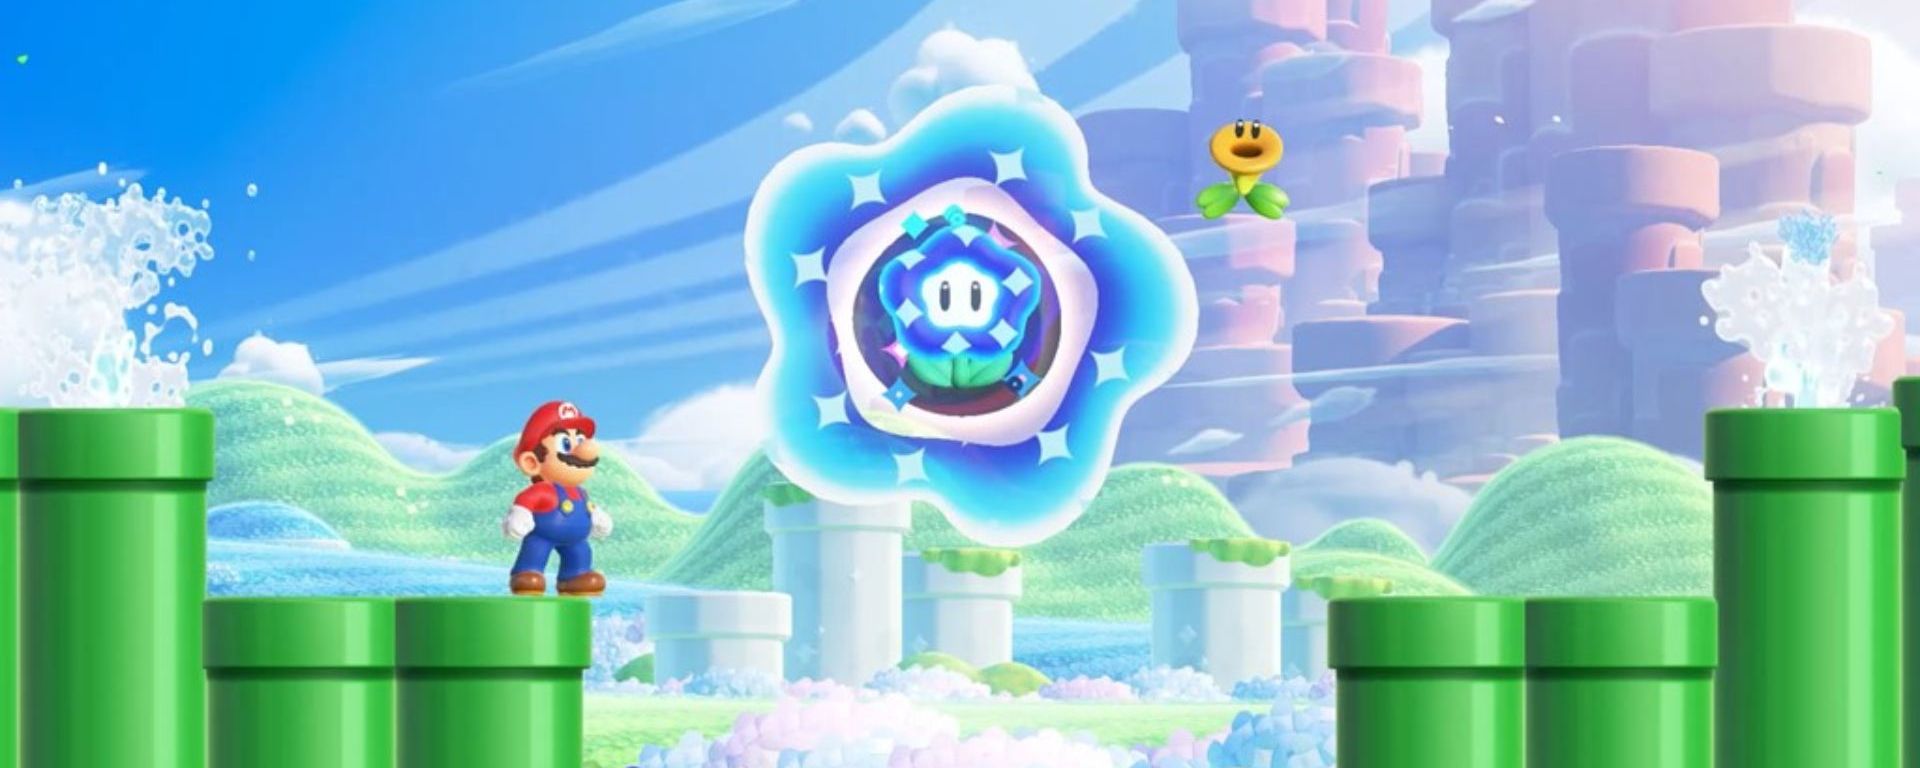 Cómo funciona el multijugador de Super Mario Bros Wonder online y local